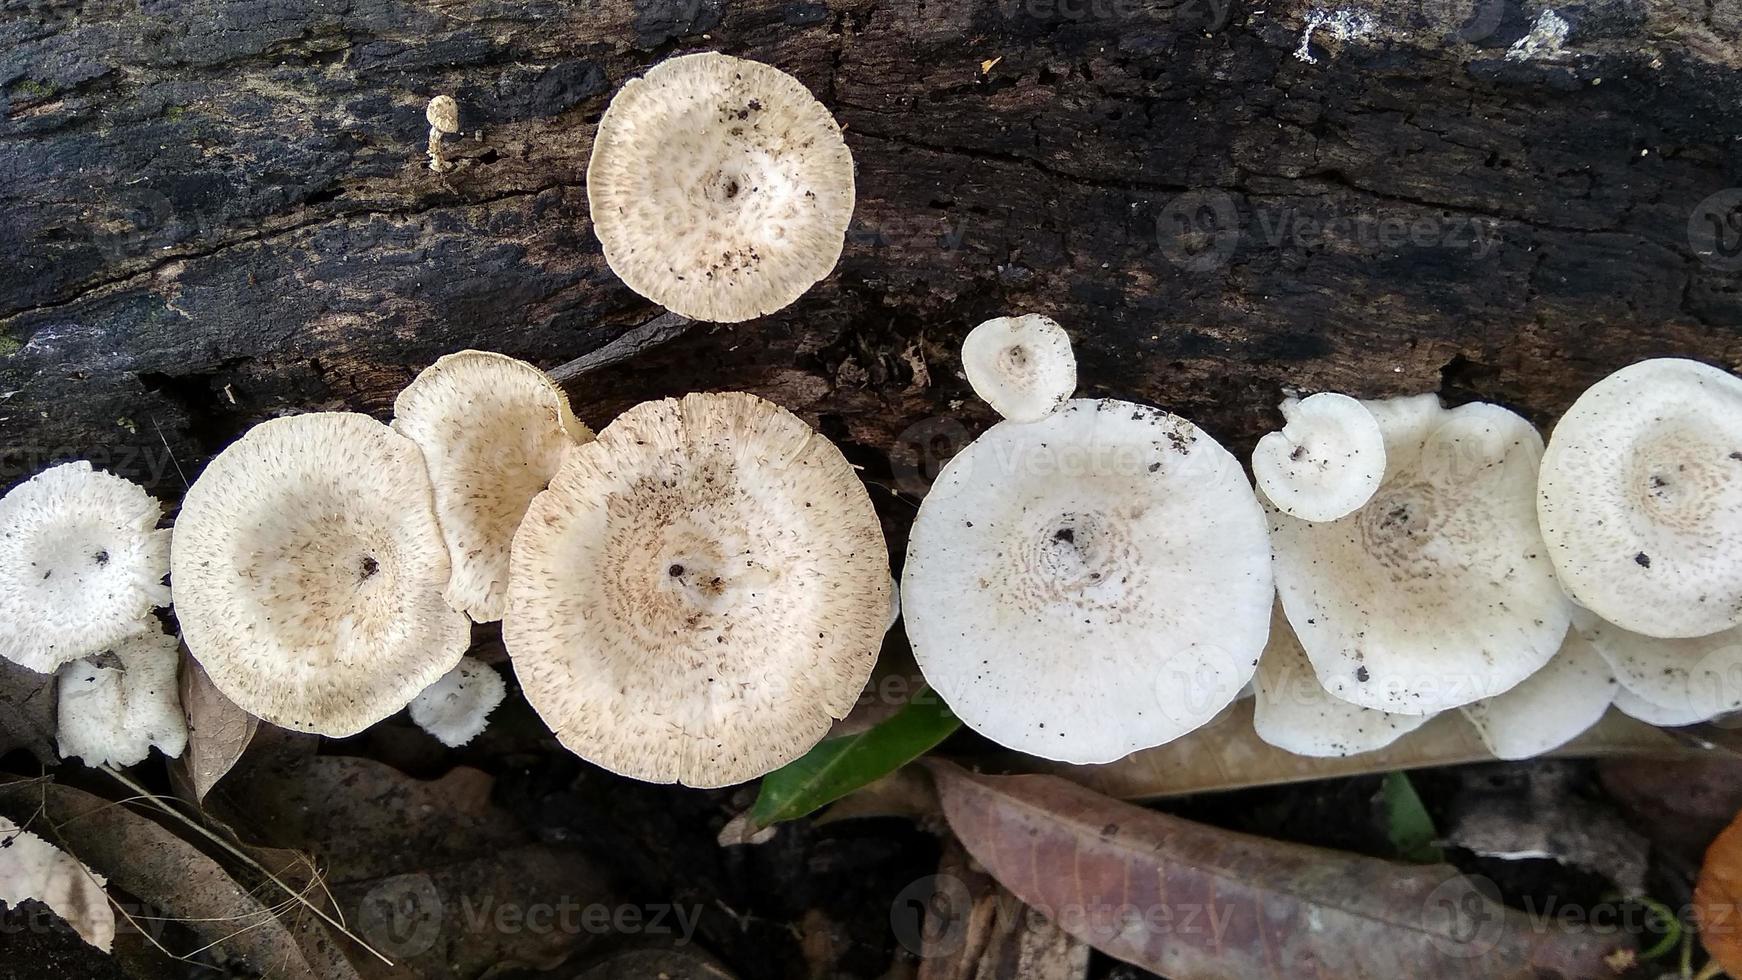 le magnifique champignon blanc sauvage lentinus tigrinus pousse sur la bûche pourrie pendant la saison des pluies. adapté à la science, à l'agriculture, au magazine, à la publicité, à l'affiche, etc. photo